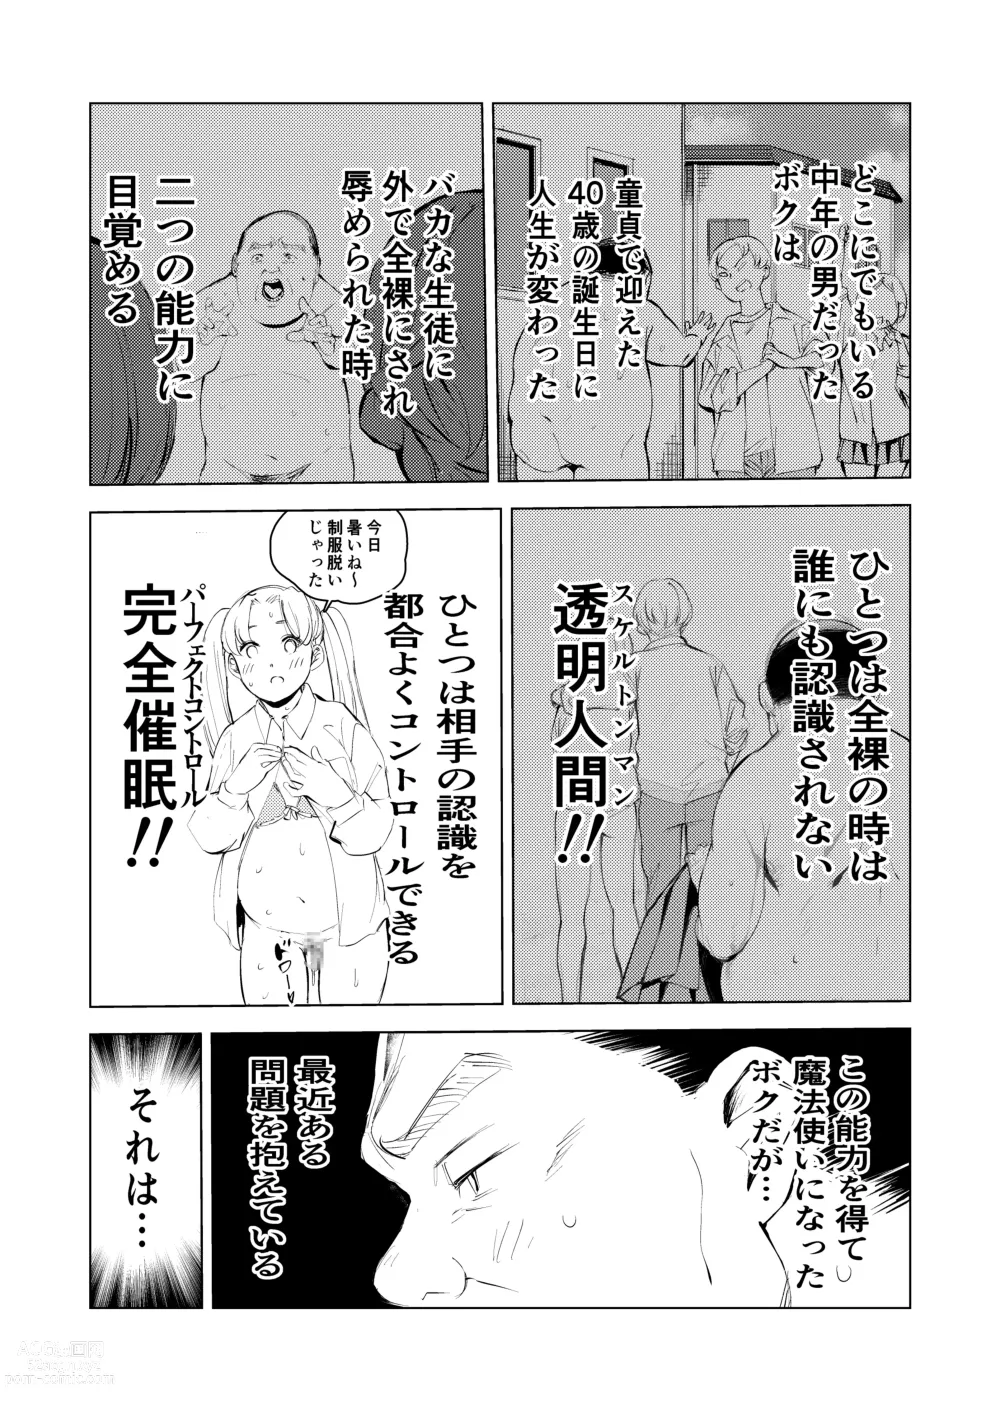 Page 6 of doujinshi 40-sai no Mahoutsukai 3